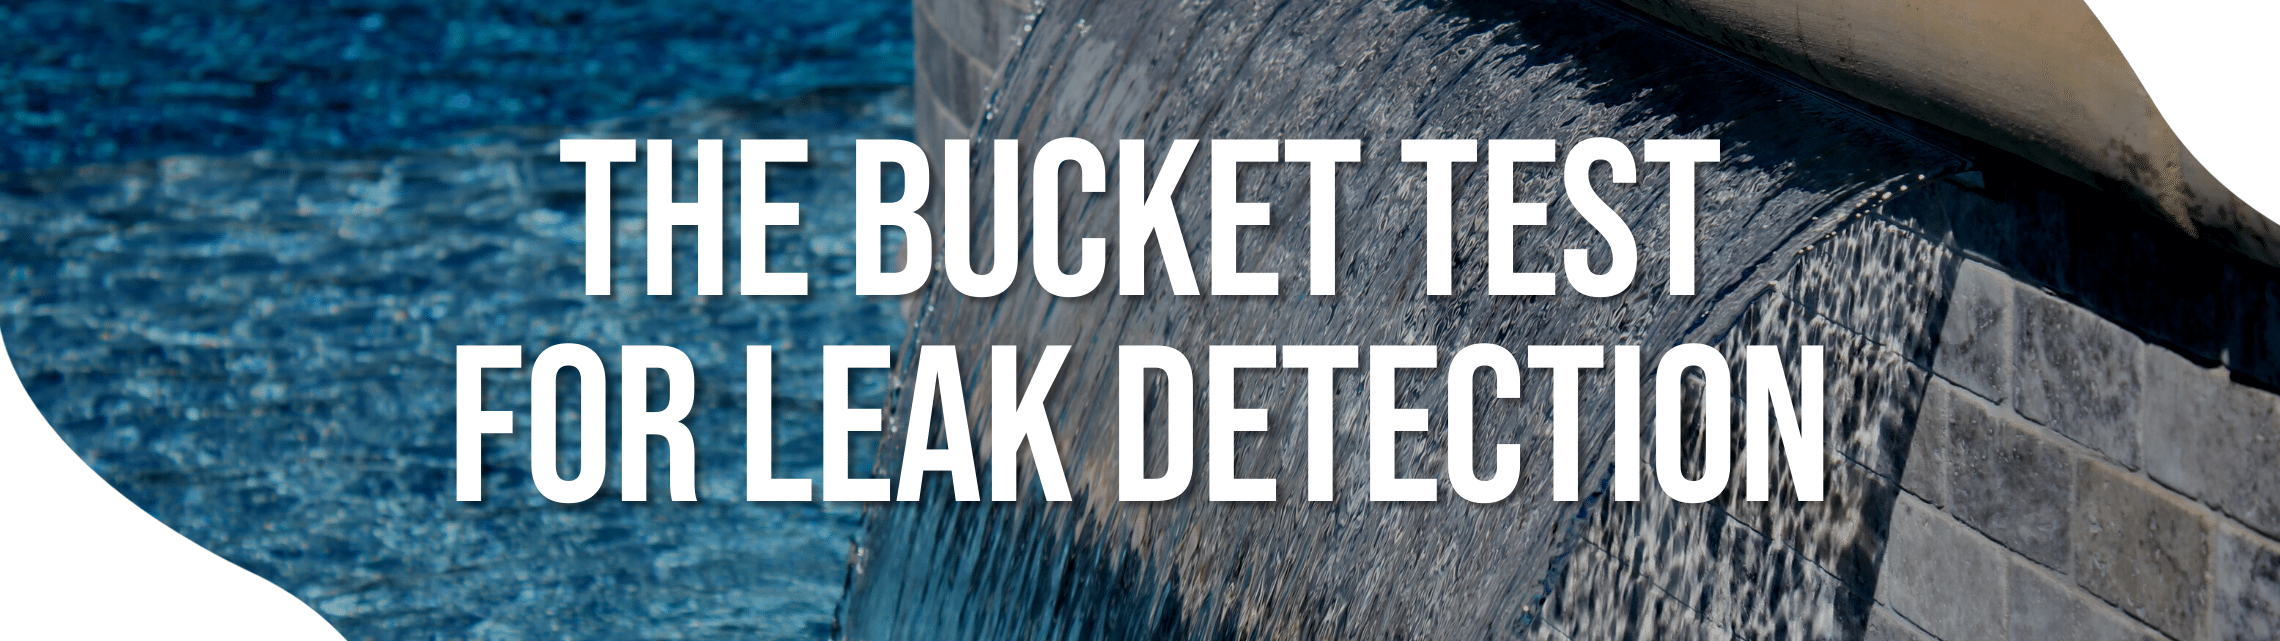 Bucket Test for Pool Leak Detection